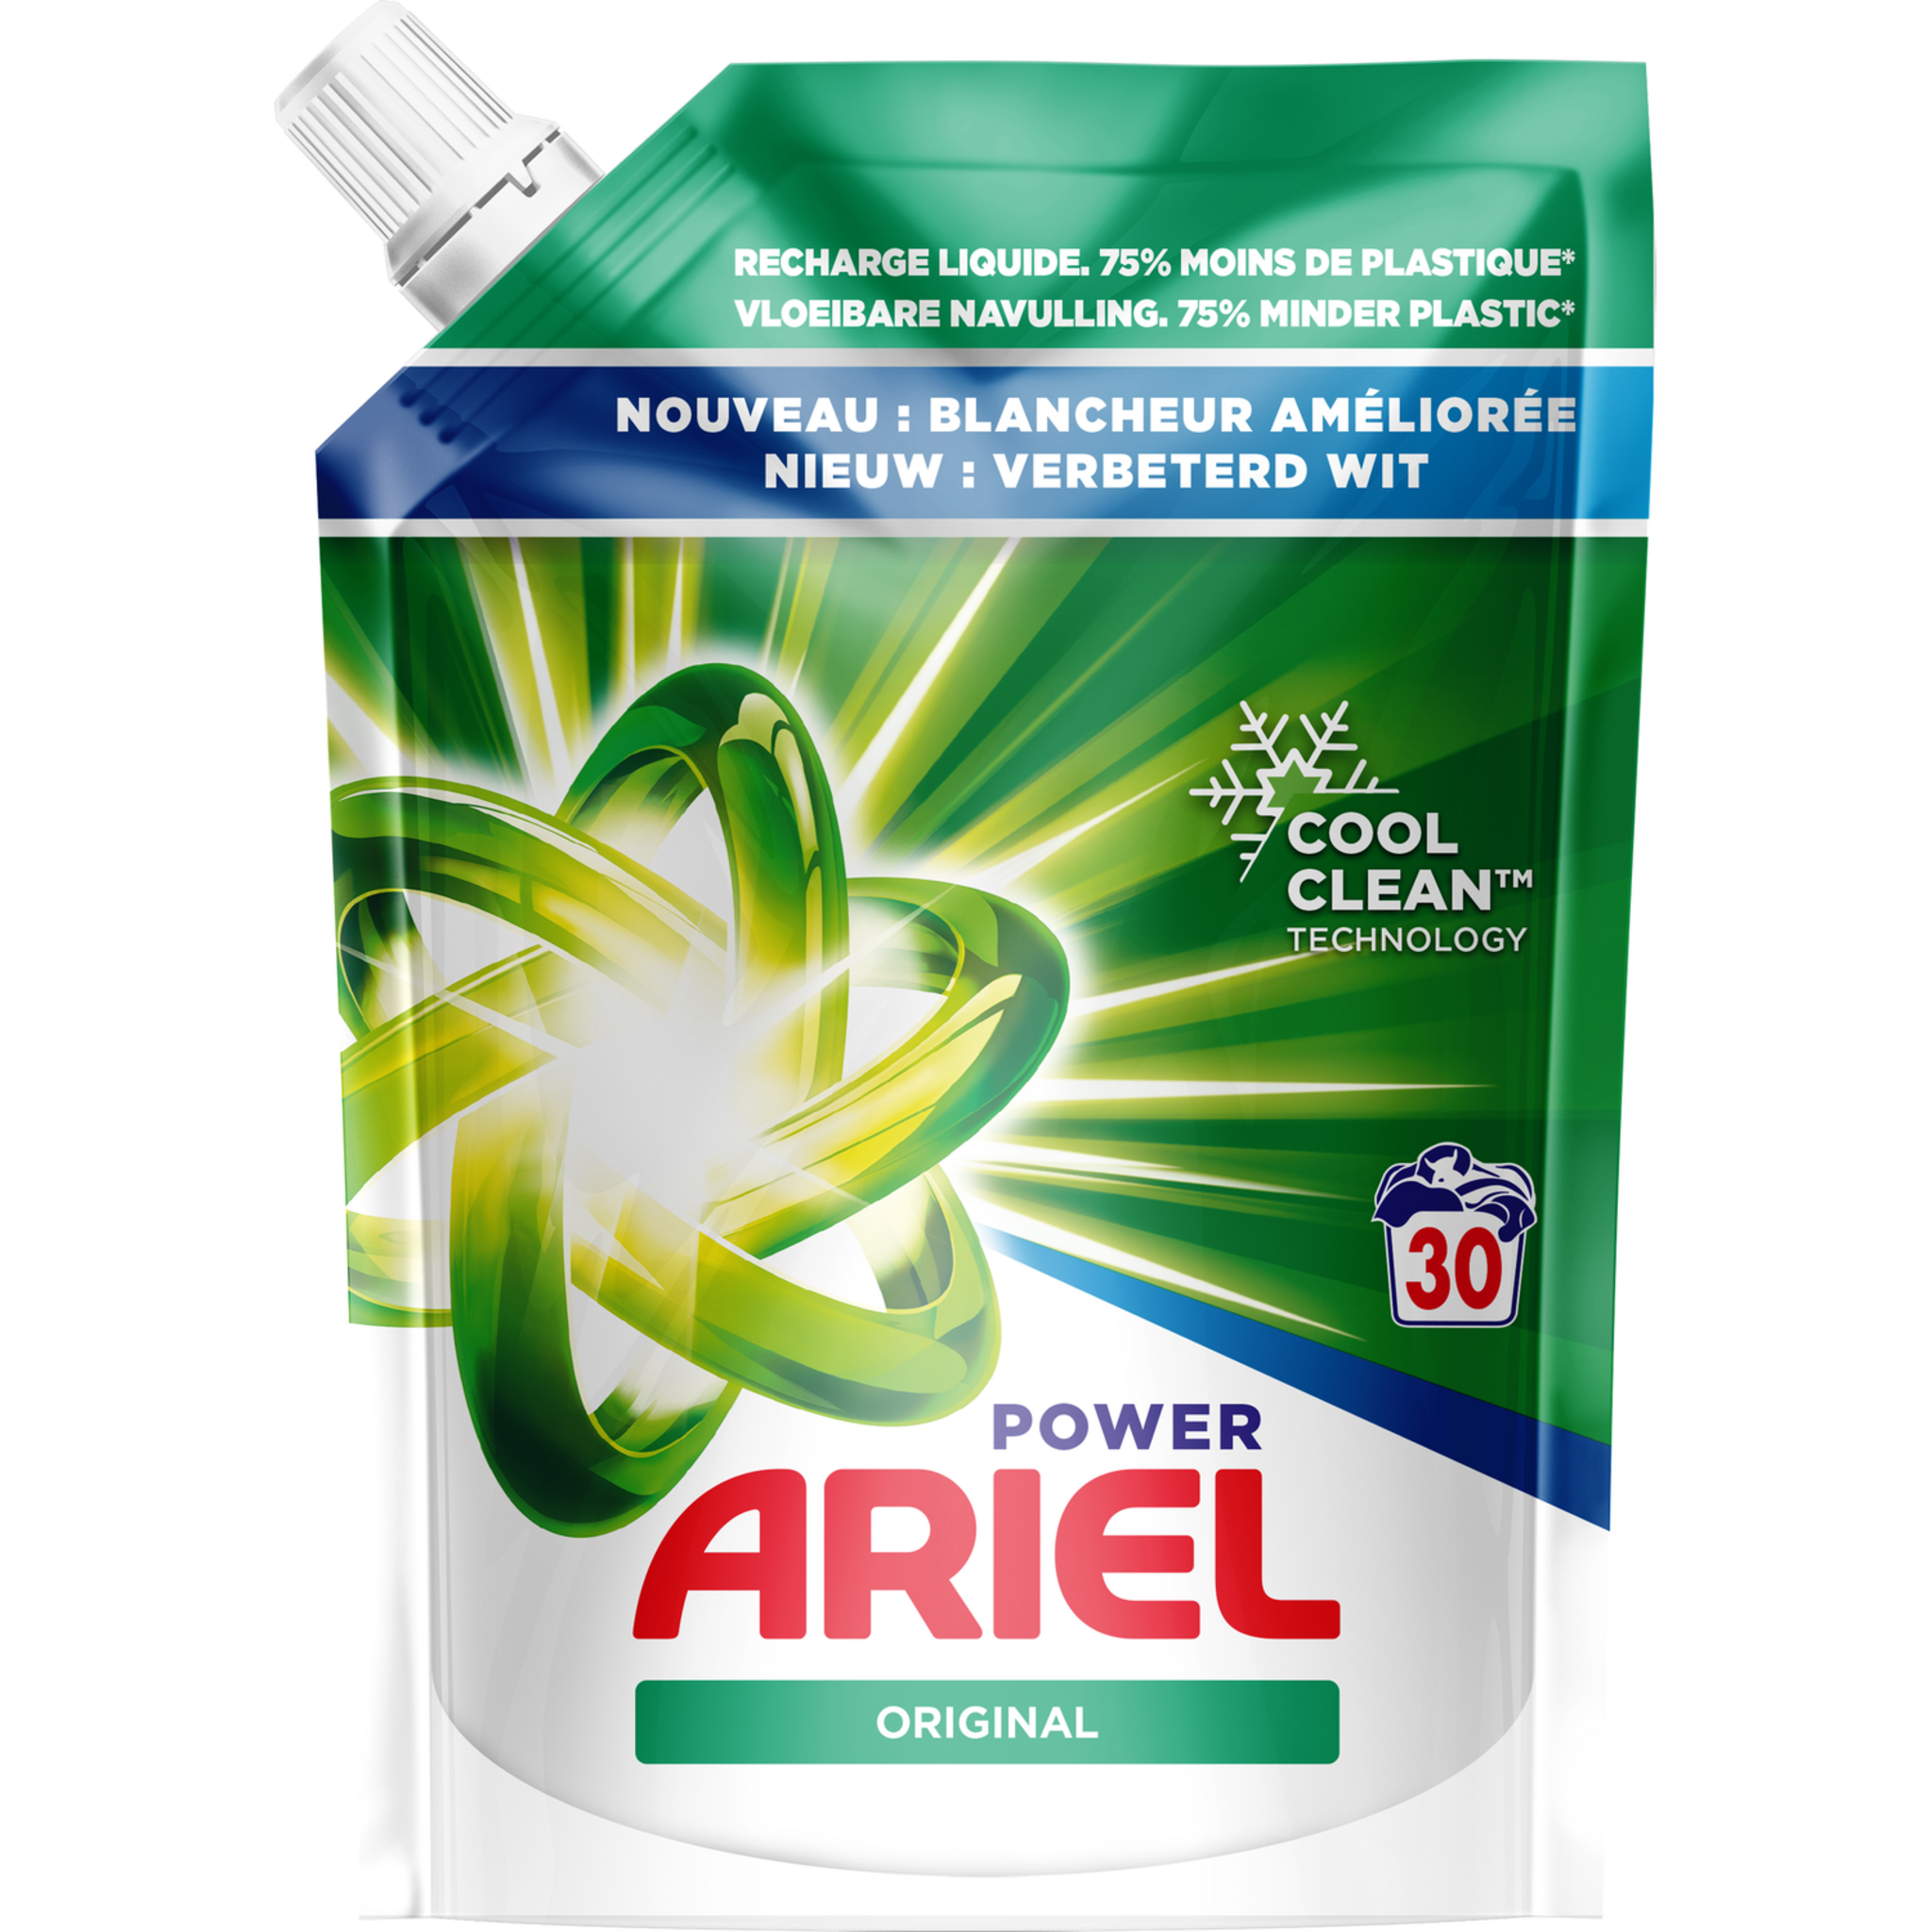 Lessive liquide écologique savon de Marseille - 1,53l - L'Arbre Vert